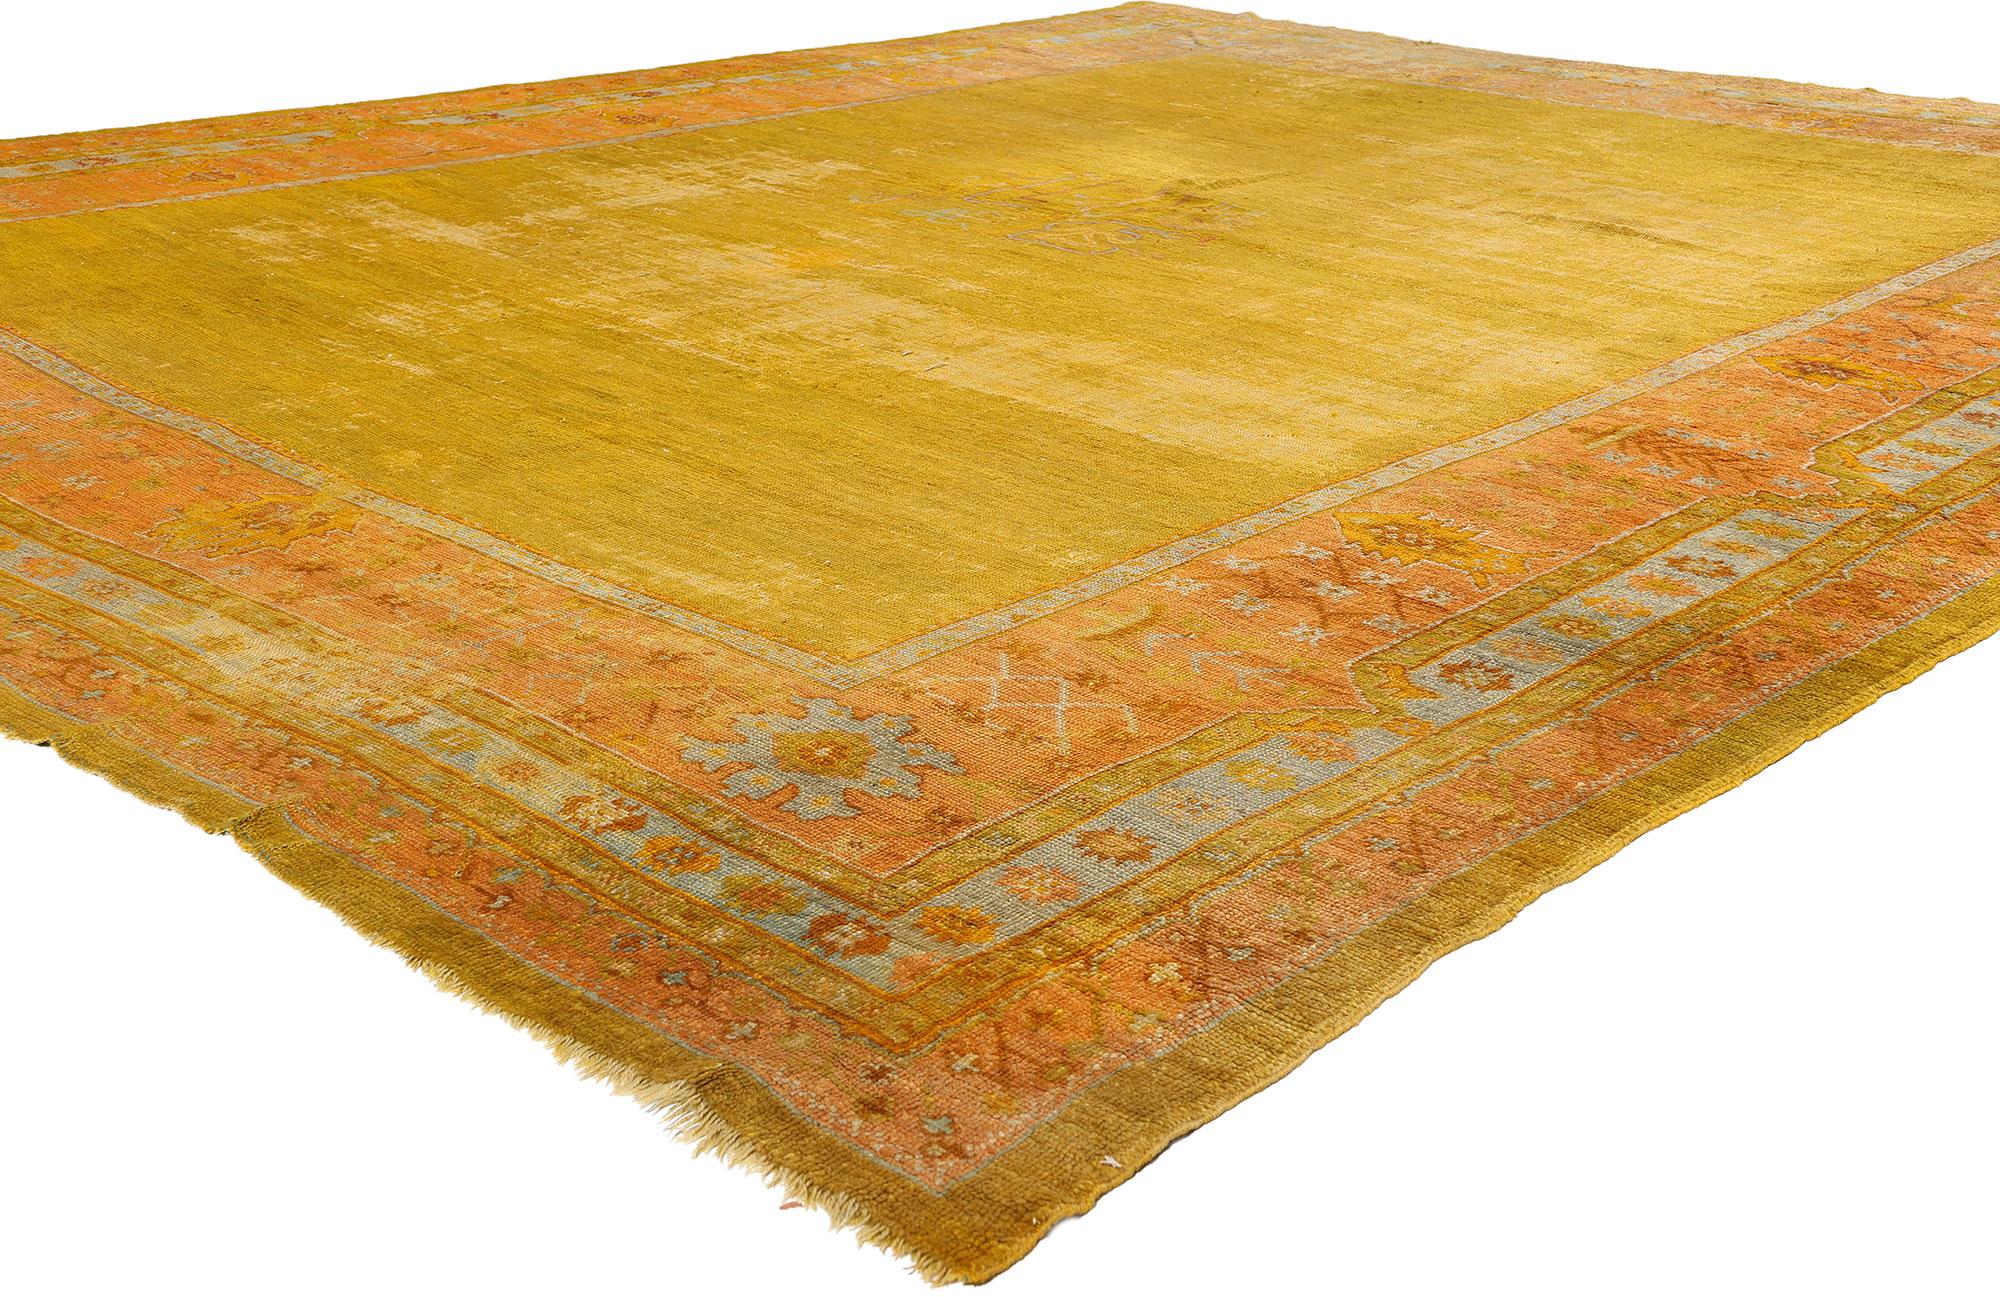 78742 Türkischer Oushak-Teppich, 12'02 x 15'00, antik-getragen. Die türkischen Oushak-Teppiche, die aus der westlichen Region Oushak in der Türkei stammen, werden wegen ihrer komplizierten Designs, ihrer weichen Farbpalette und ihrer hochwertigen